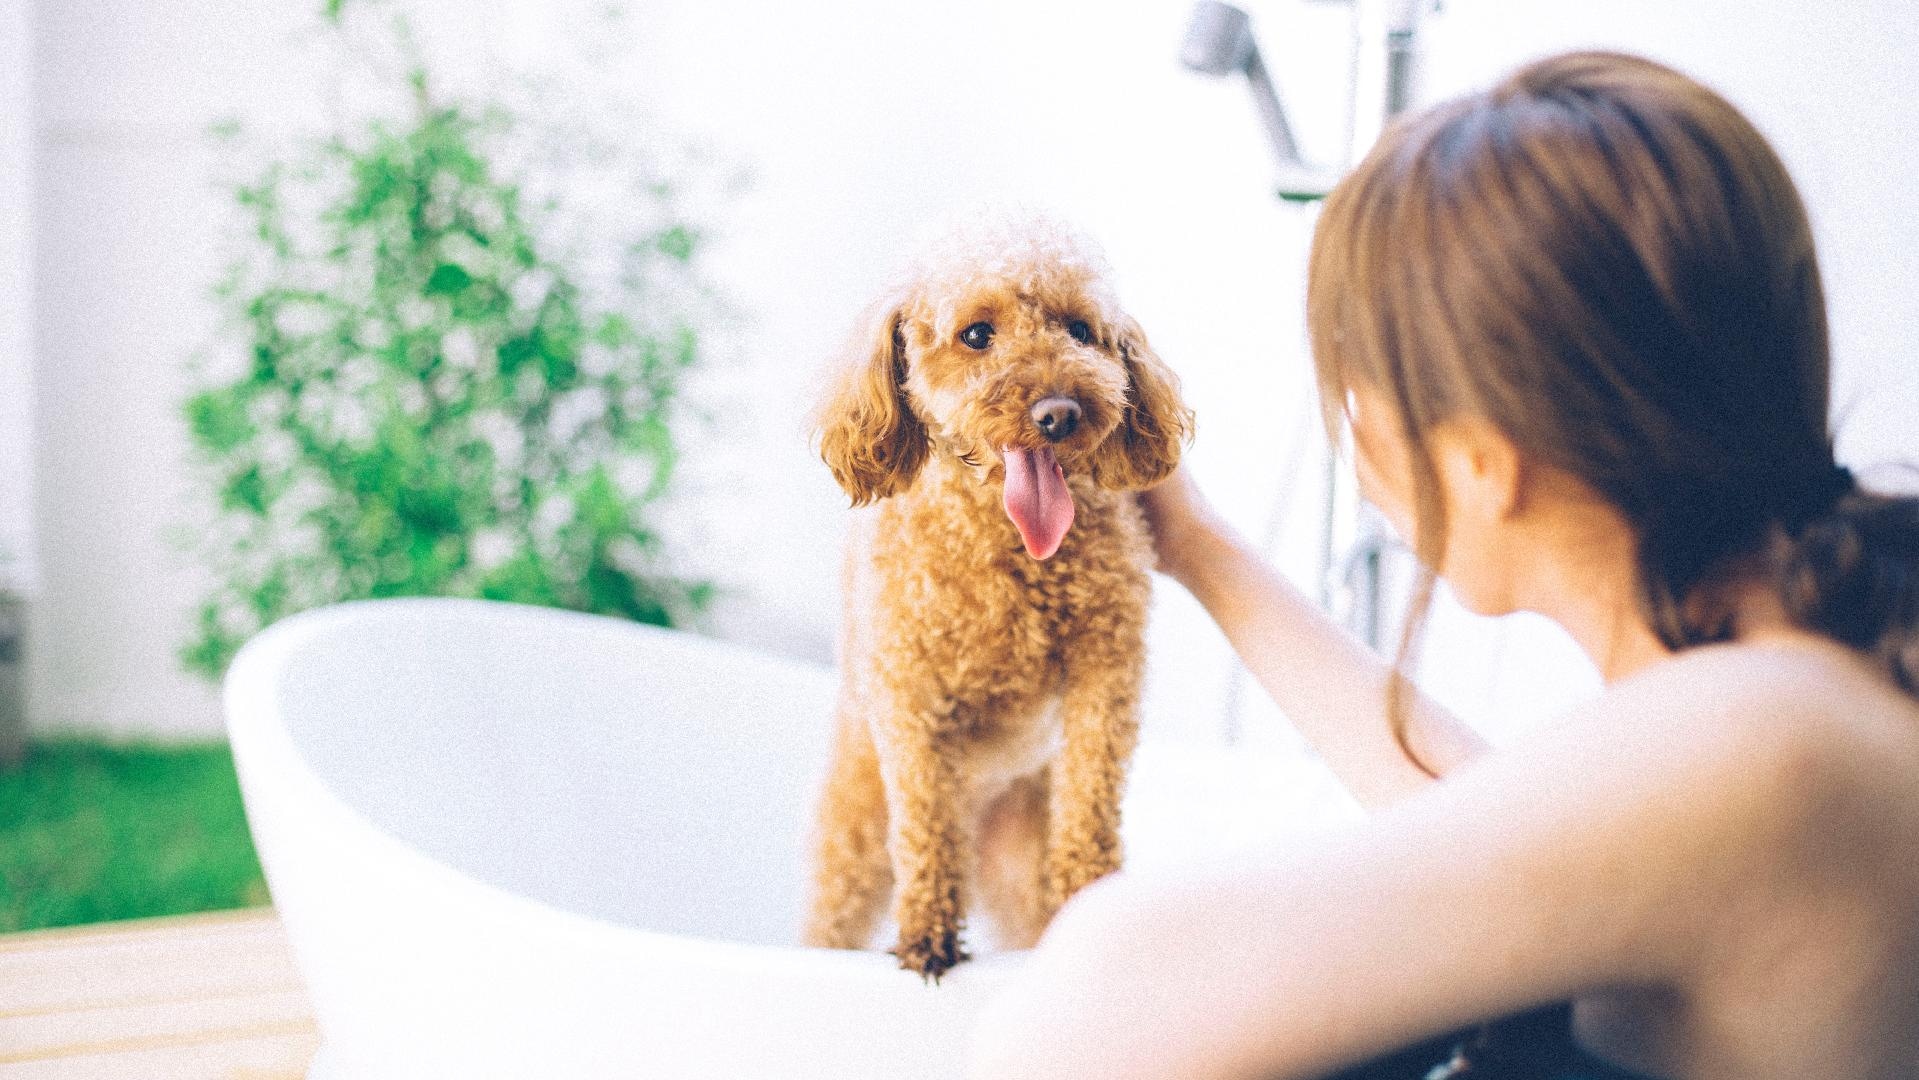 Nikmati mata air panas yang mengalir dari sumbernya bersama anjing Anda!